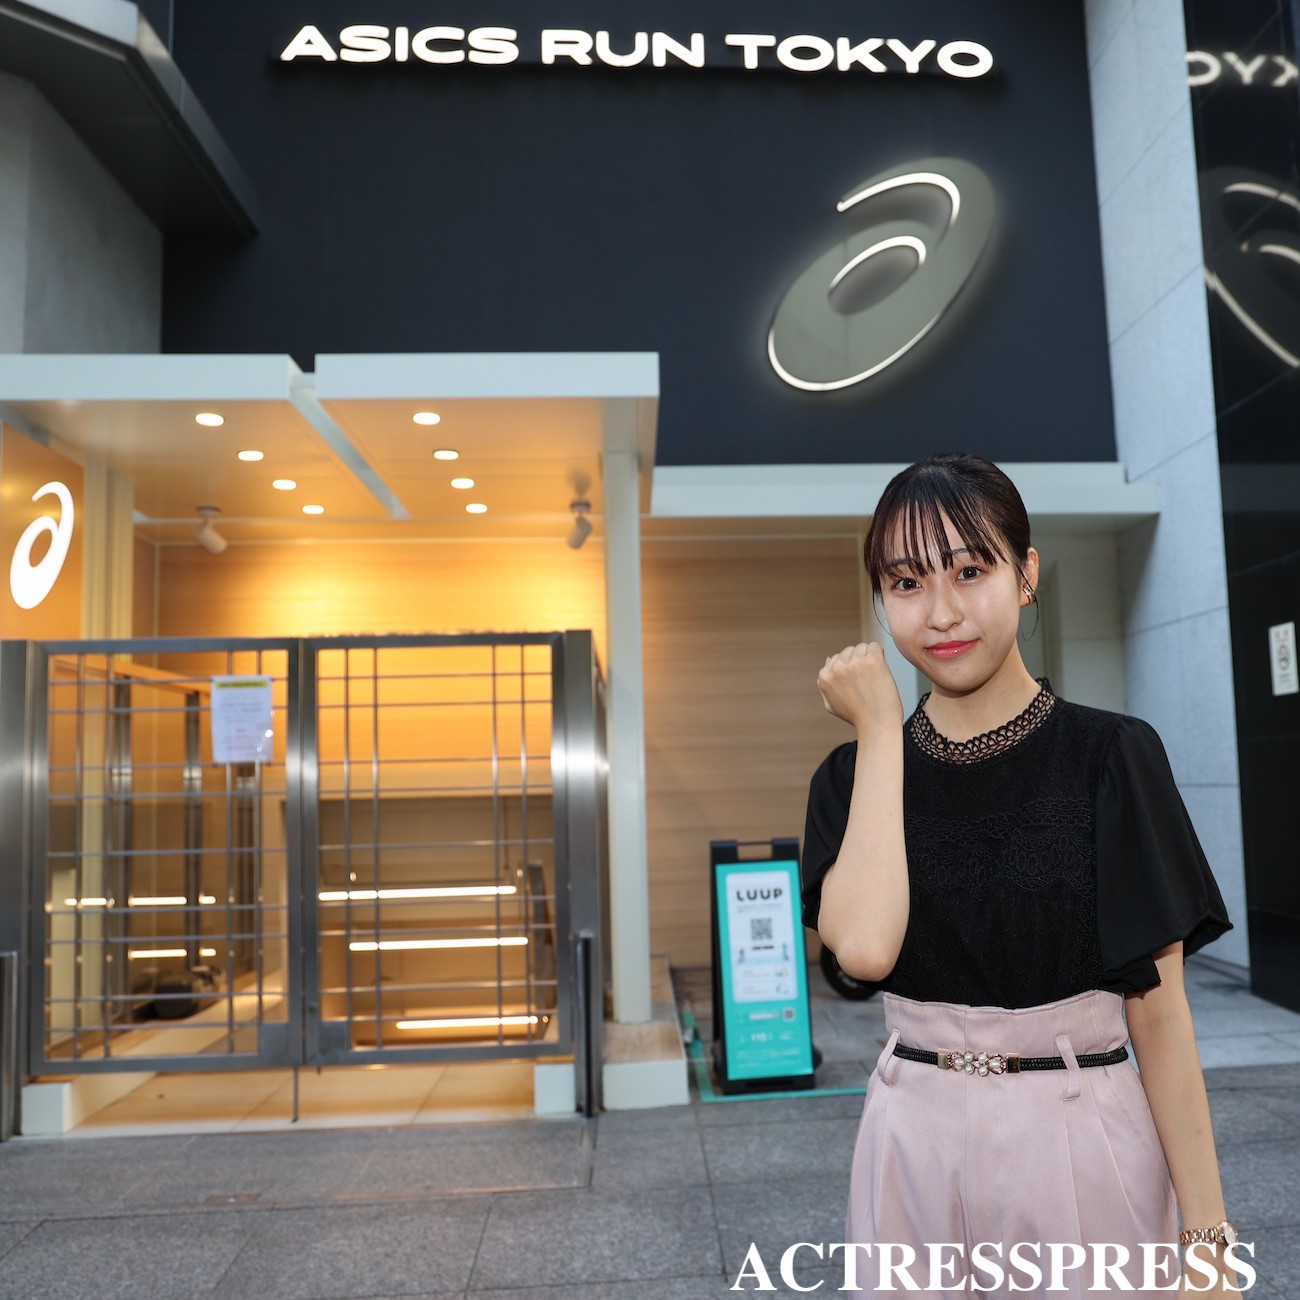 稲葉聡子・専修大学.ASICS RUN TOKYO MARUNOUCHI. ACTRESS PRESS REPORTER